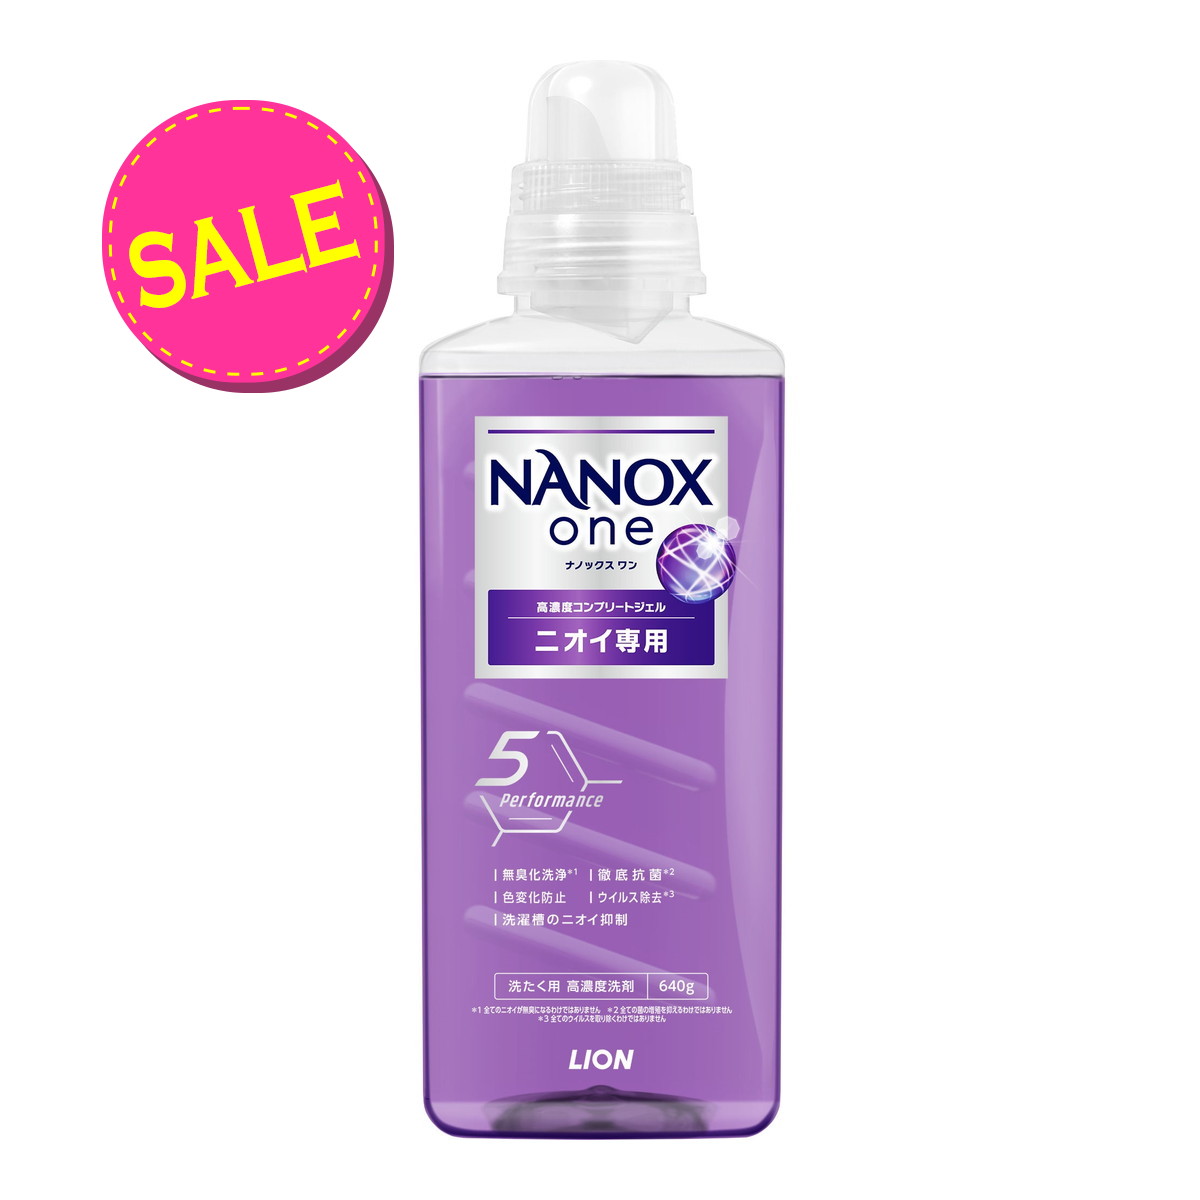 【期間限定】ライオン NANOX one ナノックス ワン ニオイ専用 本体 大 640g 洗たく用 高濃度洗剤